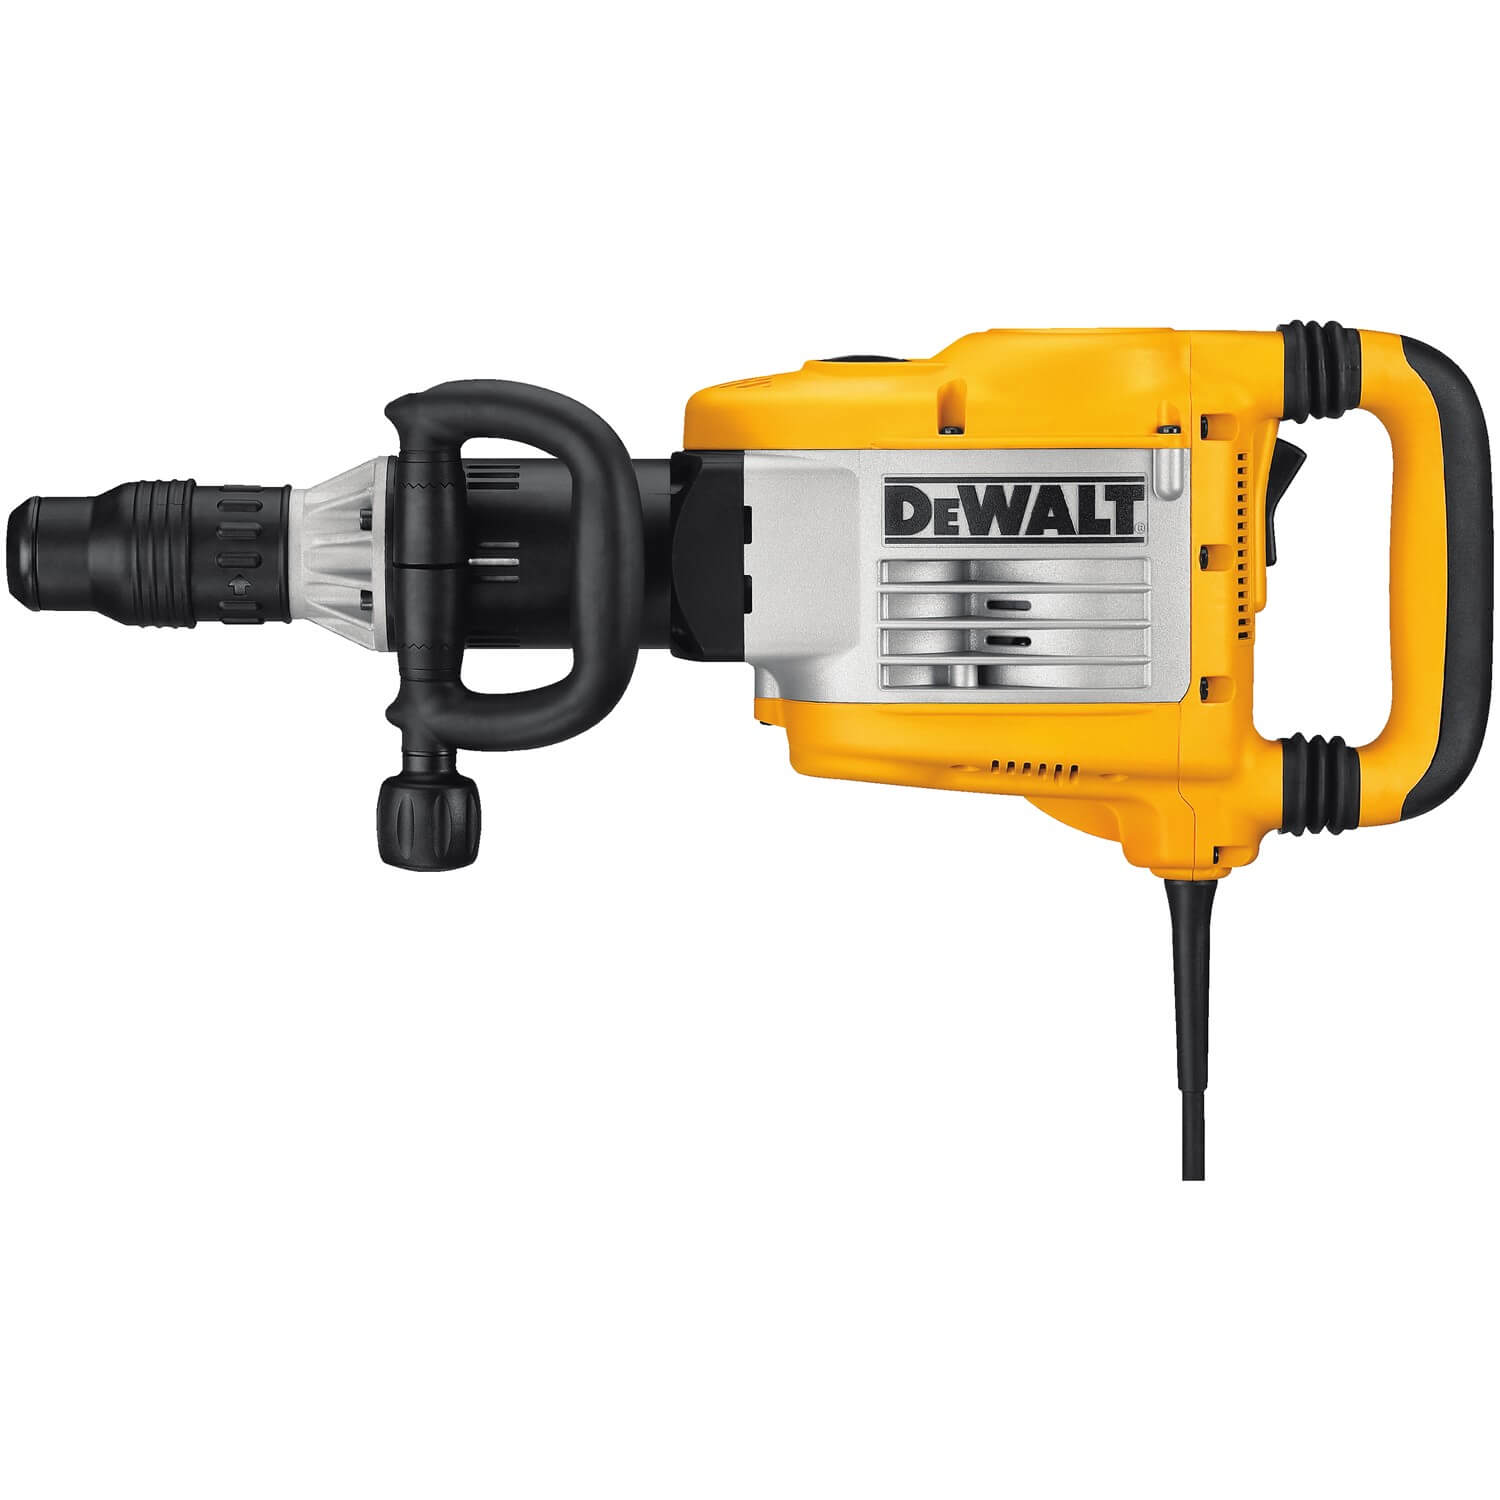 DEWALT, Dewalt D25901K - 23 lb. SDS Max Demolition Hammer w/ SHOCKS